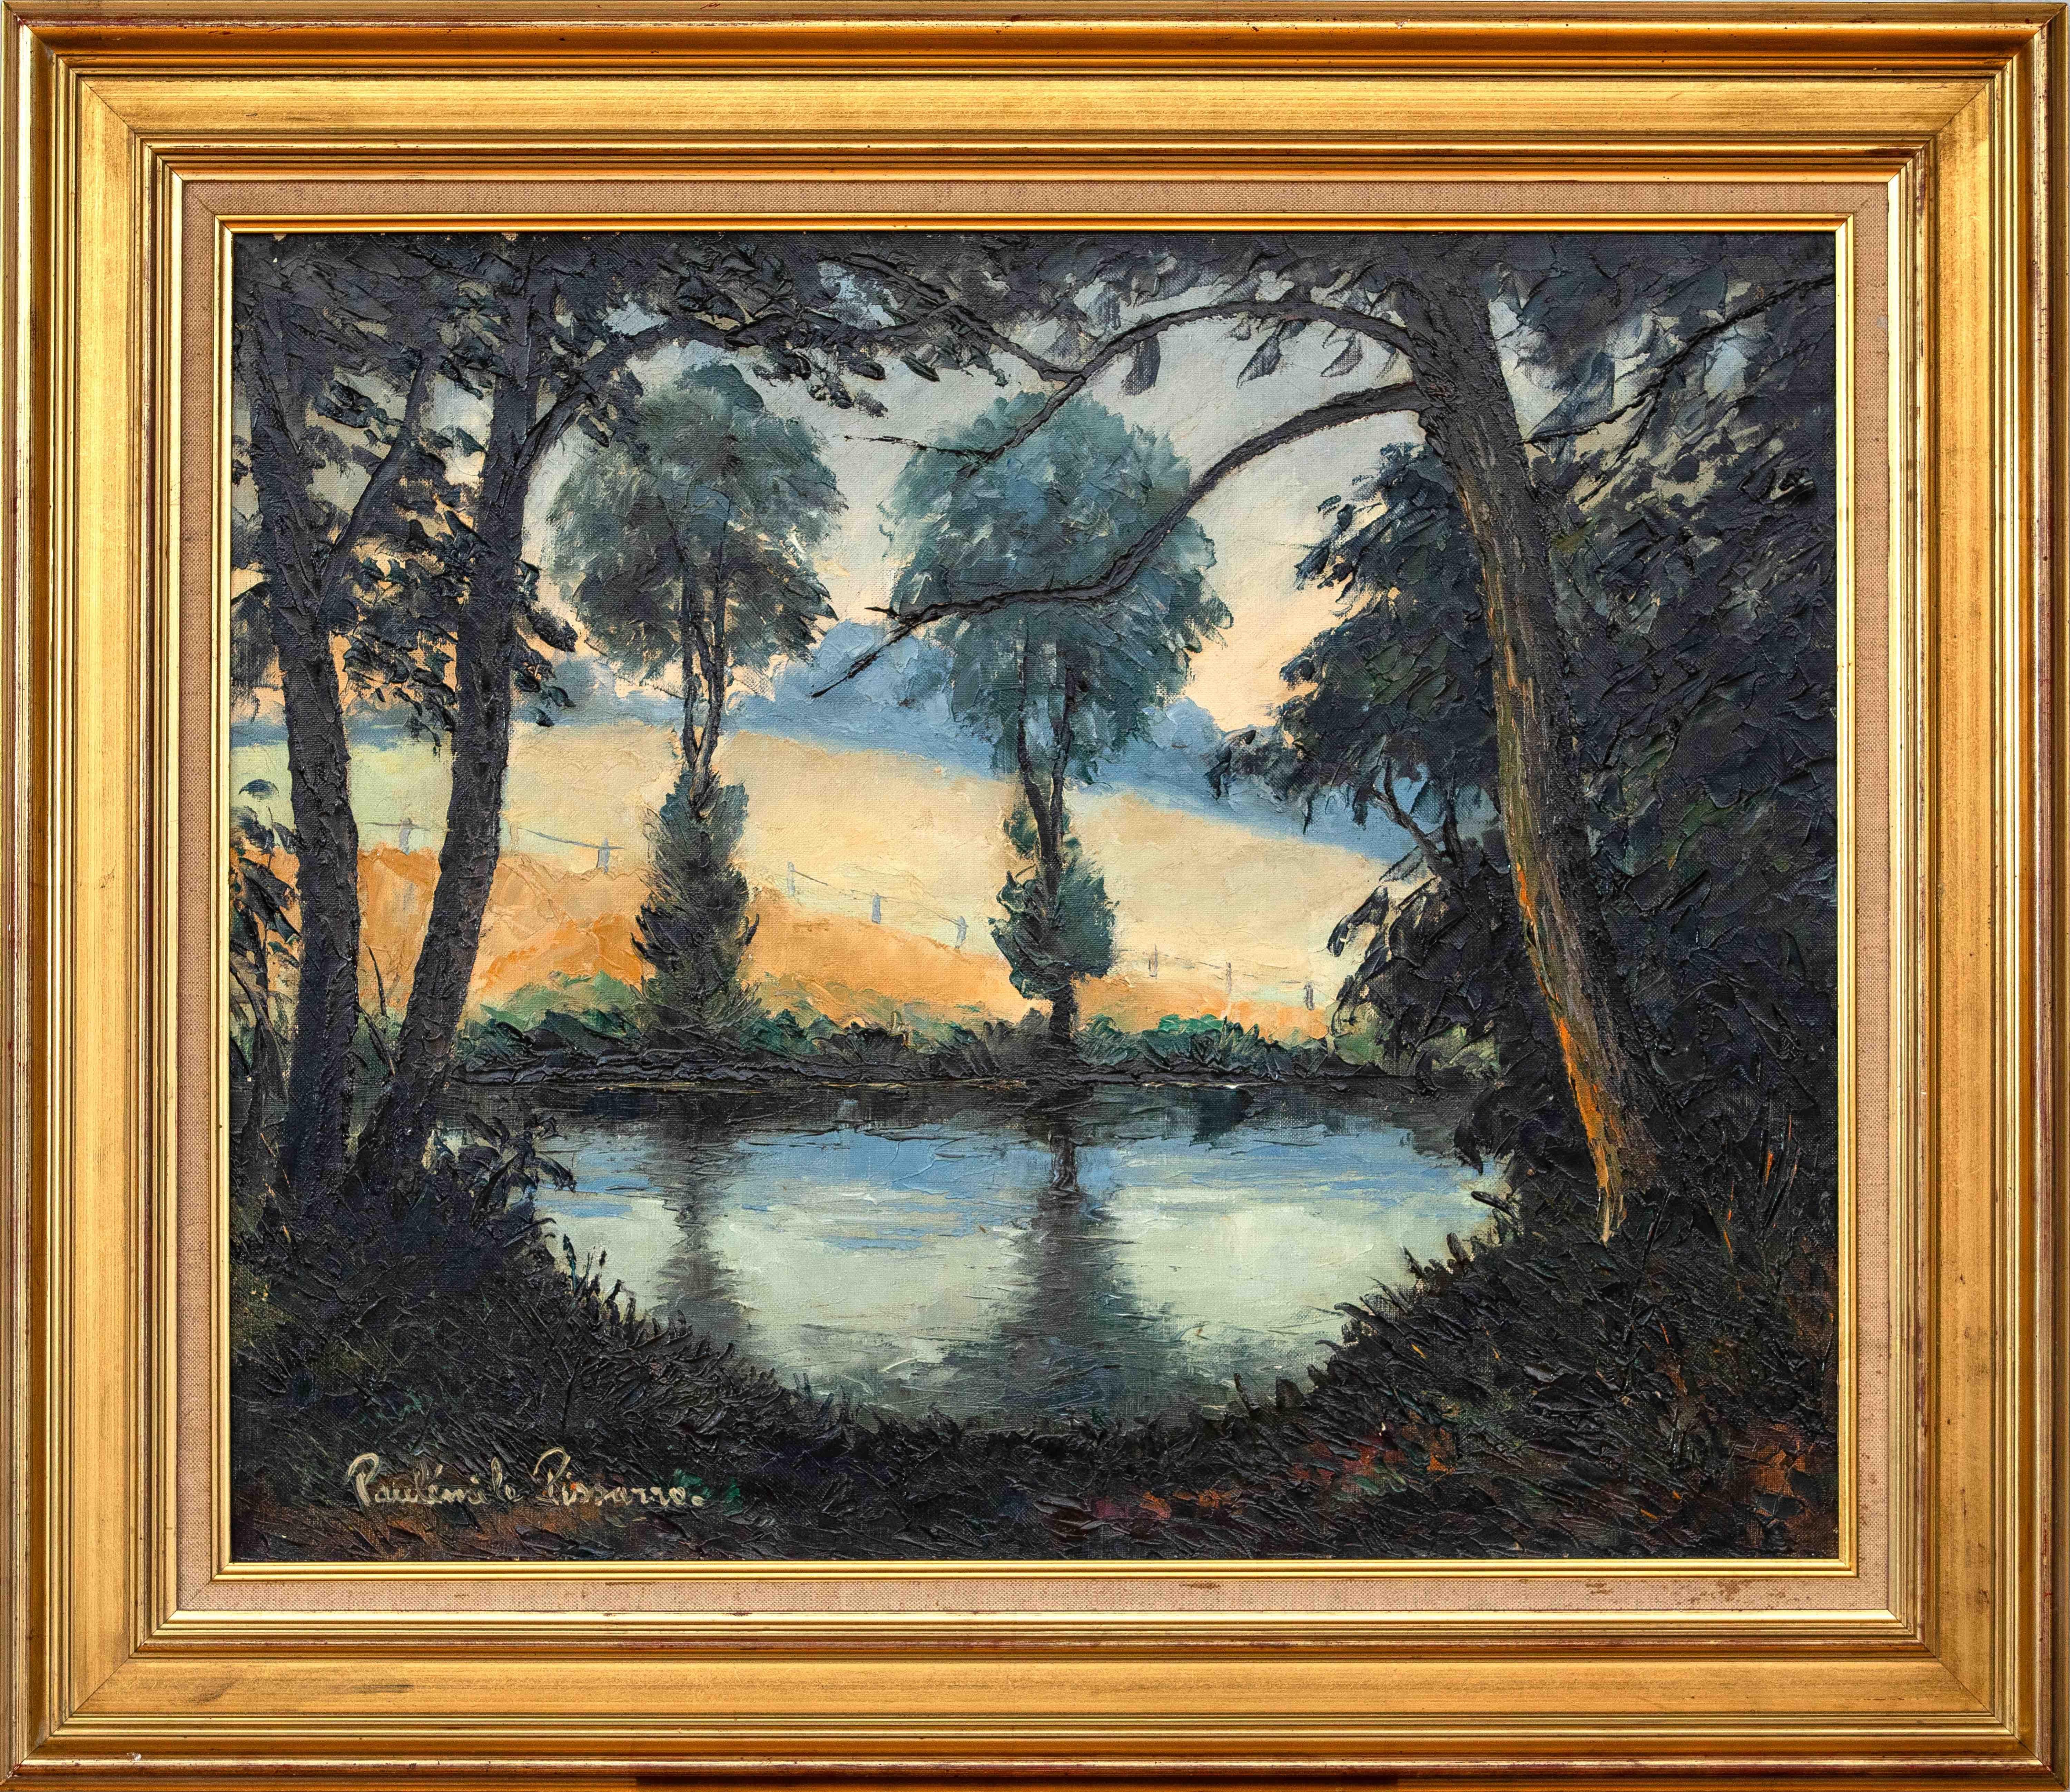 Les Bords de l’Orne au Soleil Couchant by Paulémile Pissarro -Landscape painting - Painting by Paul Emile Pissarro